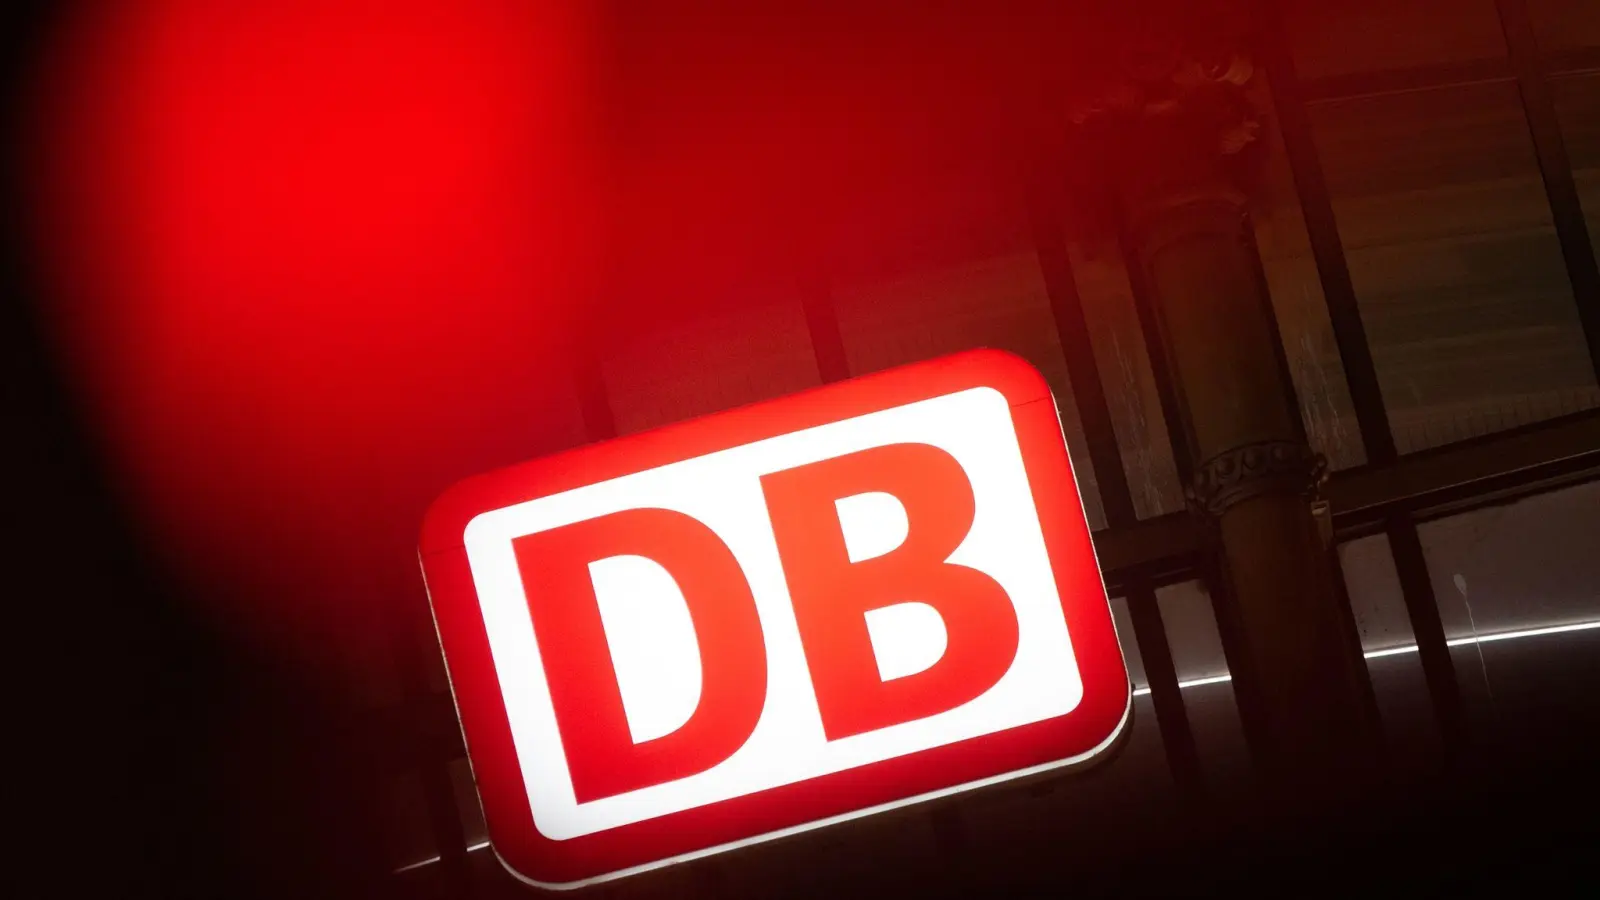 Die Deutsche Bahn will eine Generalsanierung durchführen - allerdings erst nach der Fußball-EM 2024. (Foto: Sebastian Gollnow/dpa)